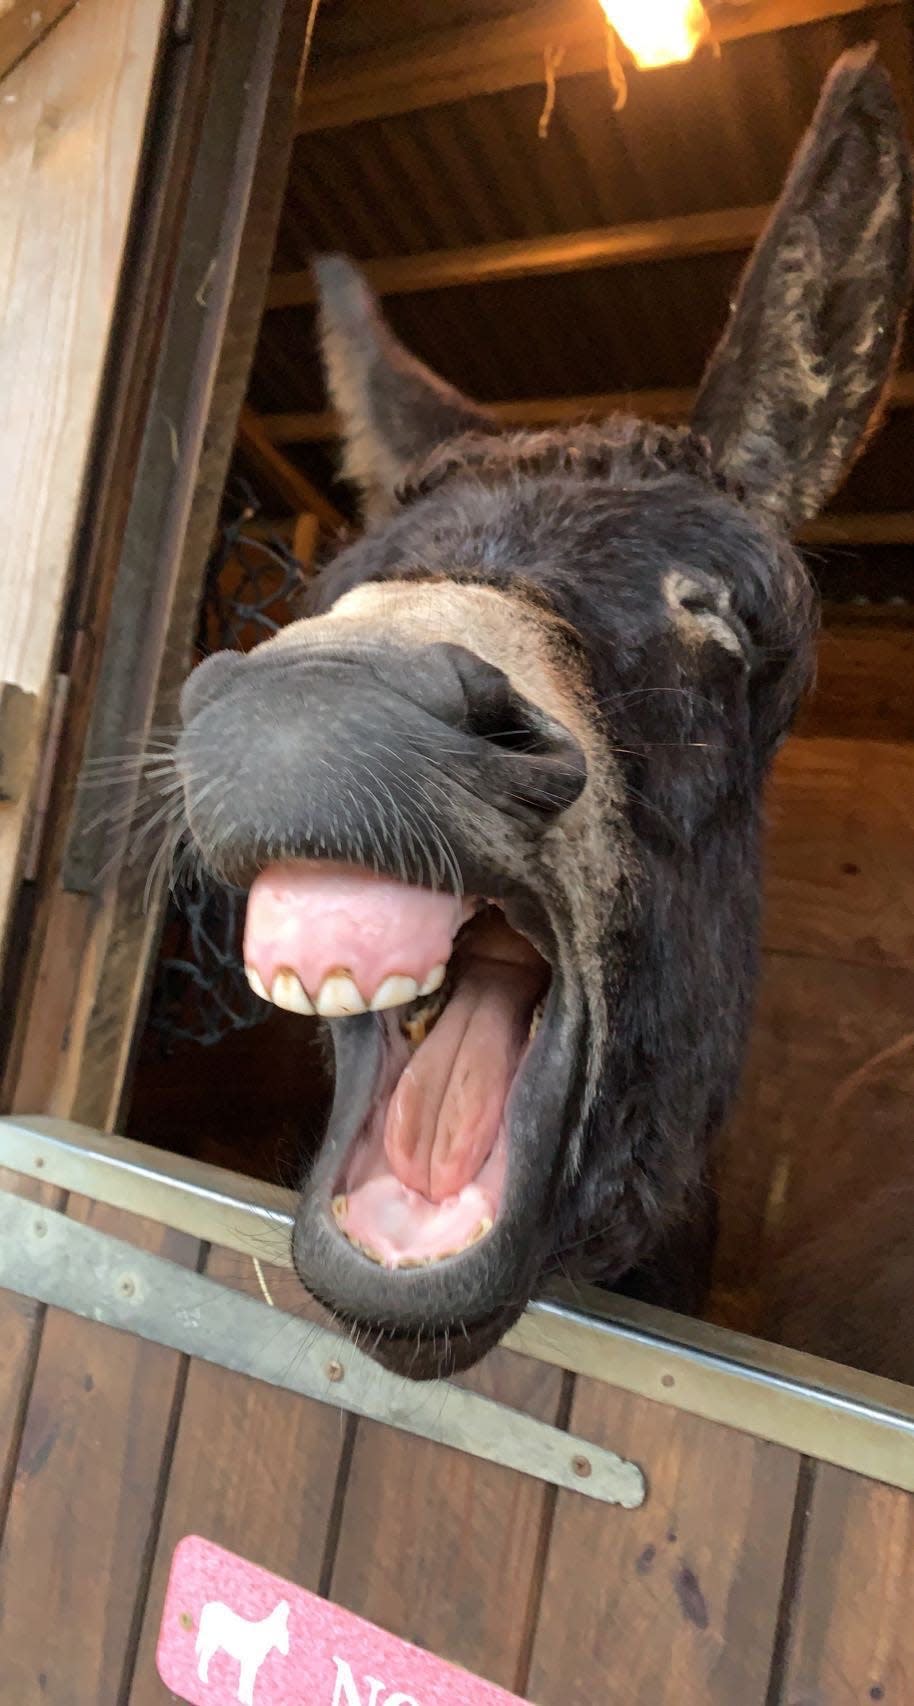 A donkey yawns